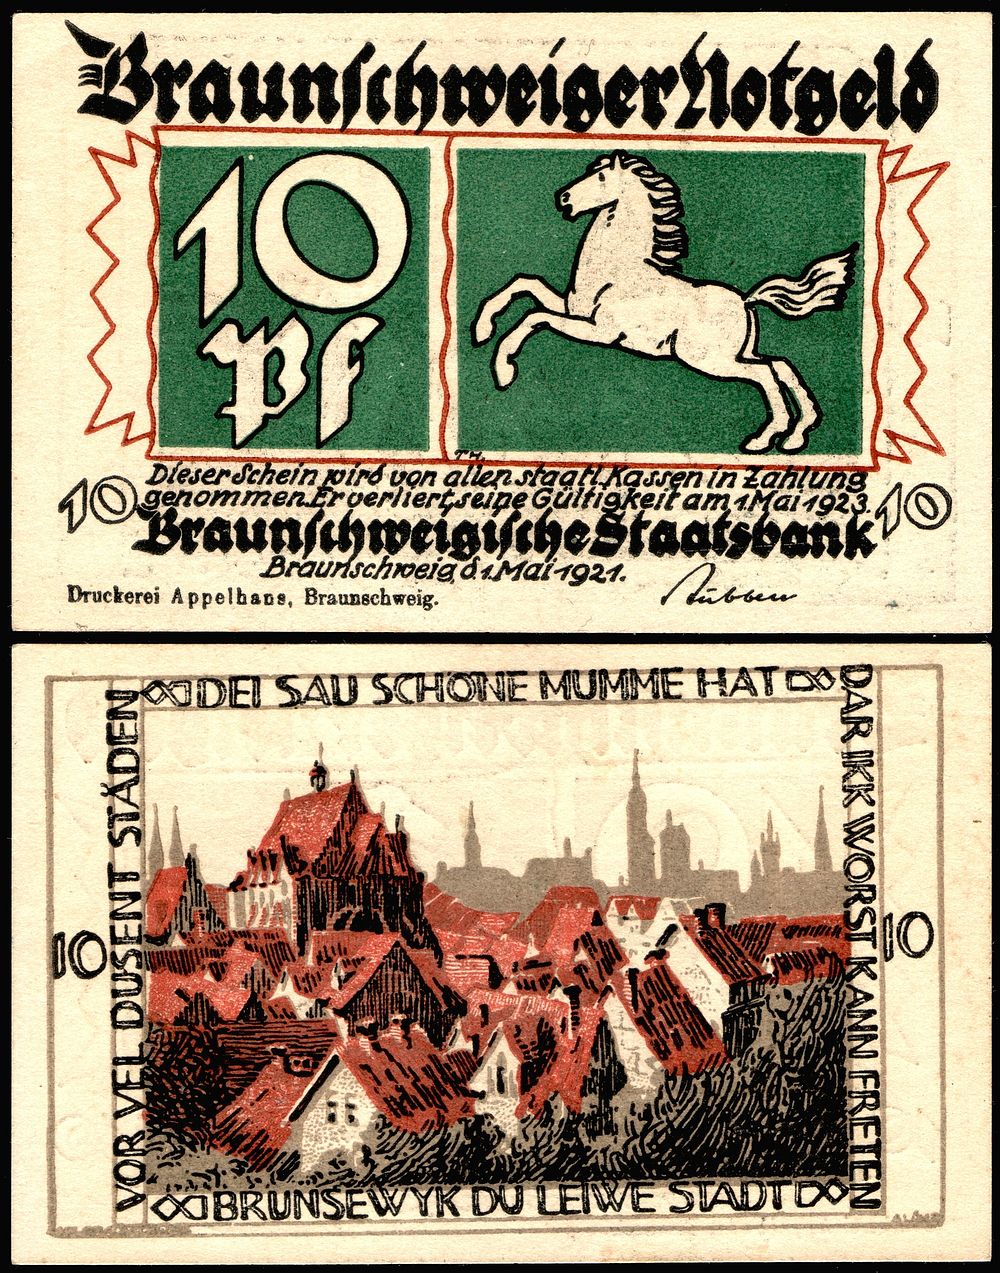 10 Pfennig Notgeld banknote of Braunschweig (1921), RV: townscape, size: 50 mm x 79 mm.